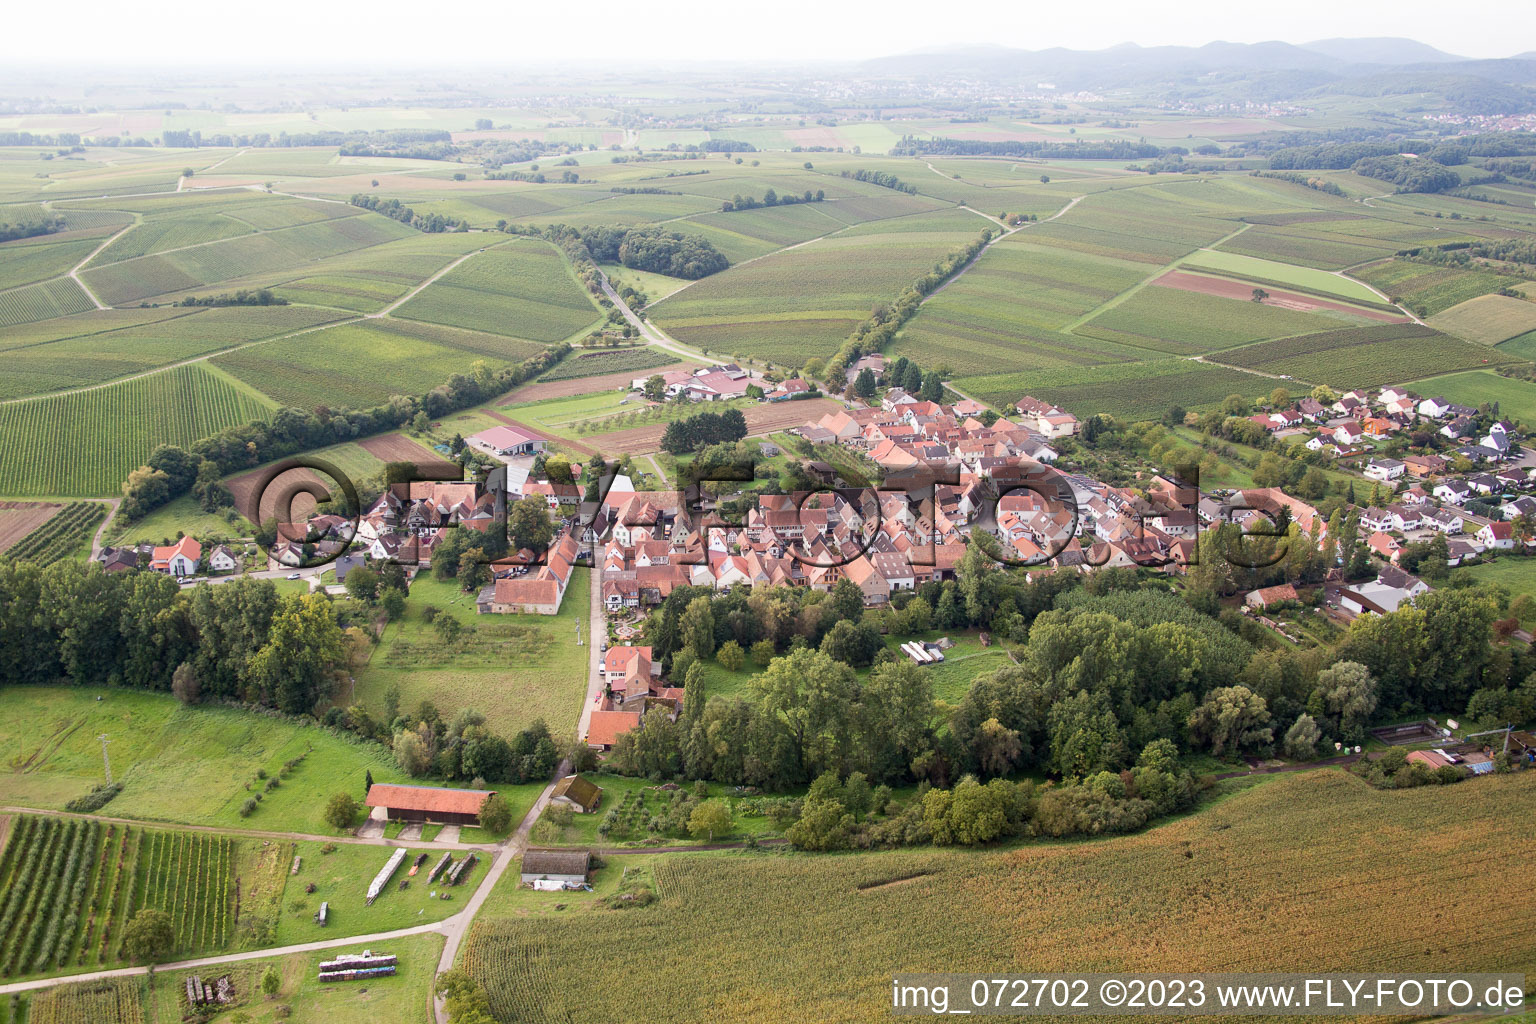 Vue aérienne de Quartier Klingen in Heuchelheim-Klingen dans le département Rhénanie-Palatinat, Allemagne